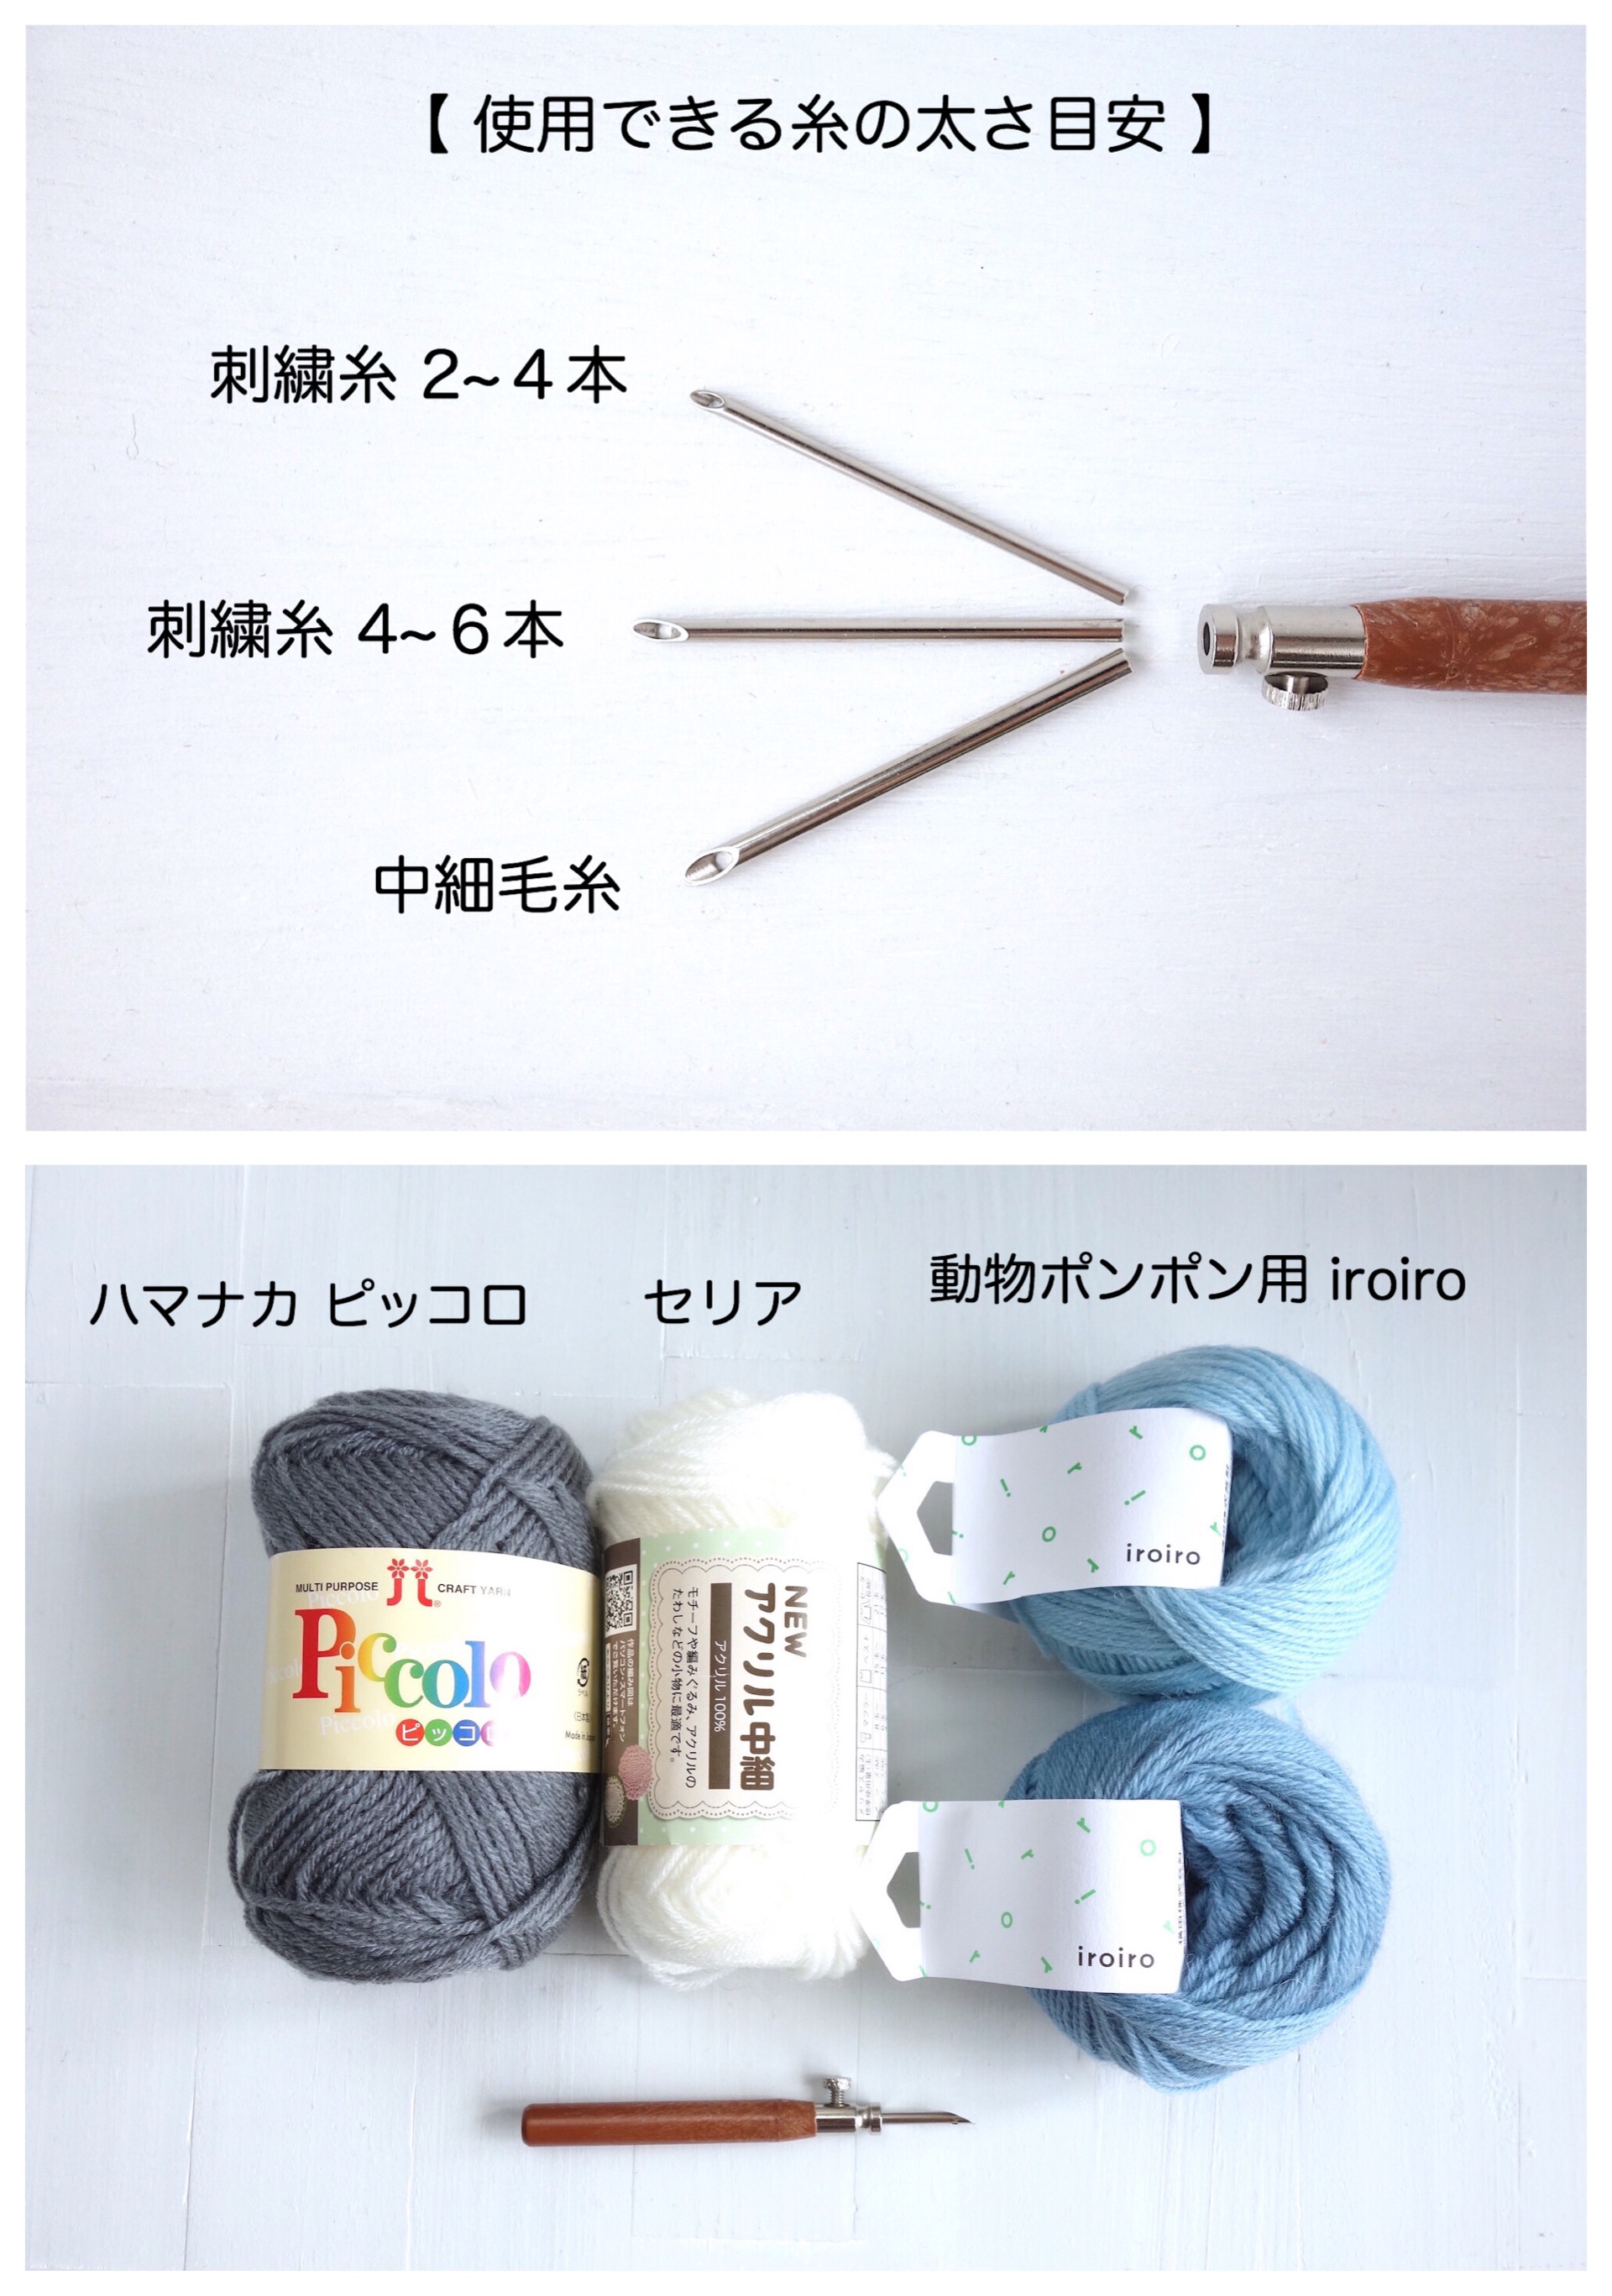 中細毛糸用パンチニードル ポルトガル製 クリスマスの図案セット 針の長さを変えられます Iichi ハンドメイド クラフト作品 手仕事品の通販